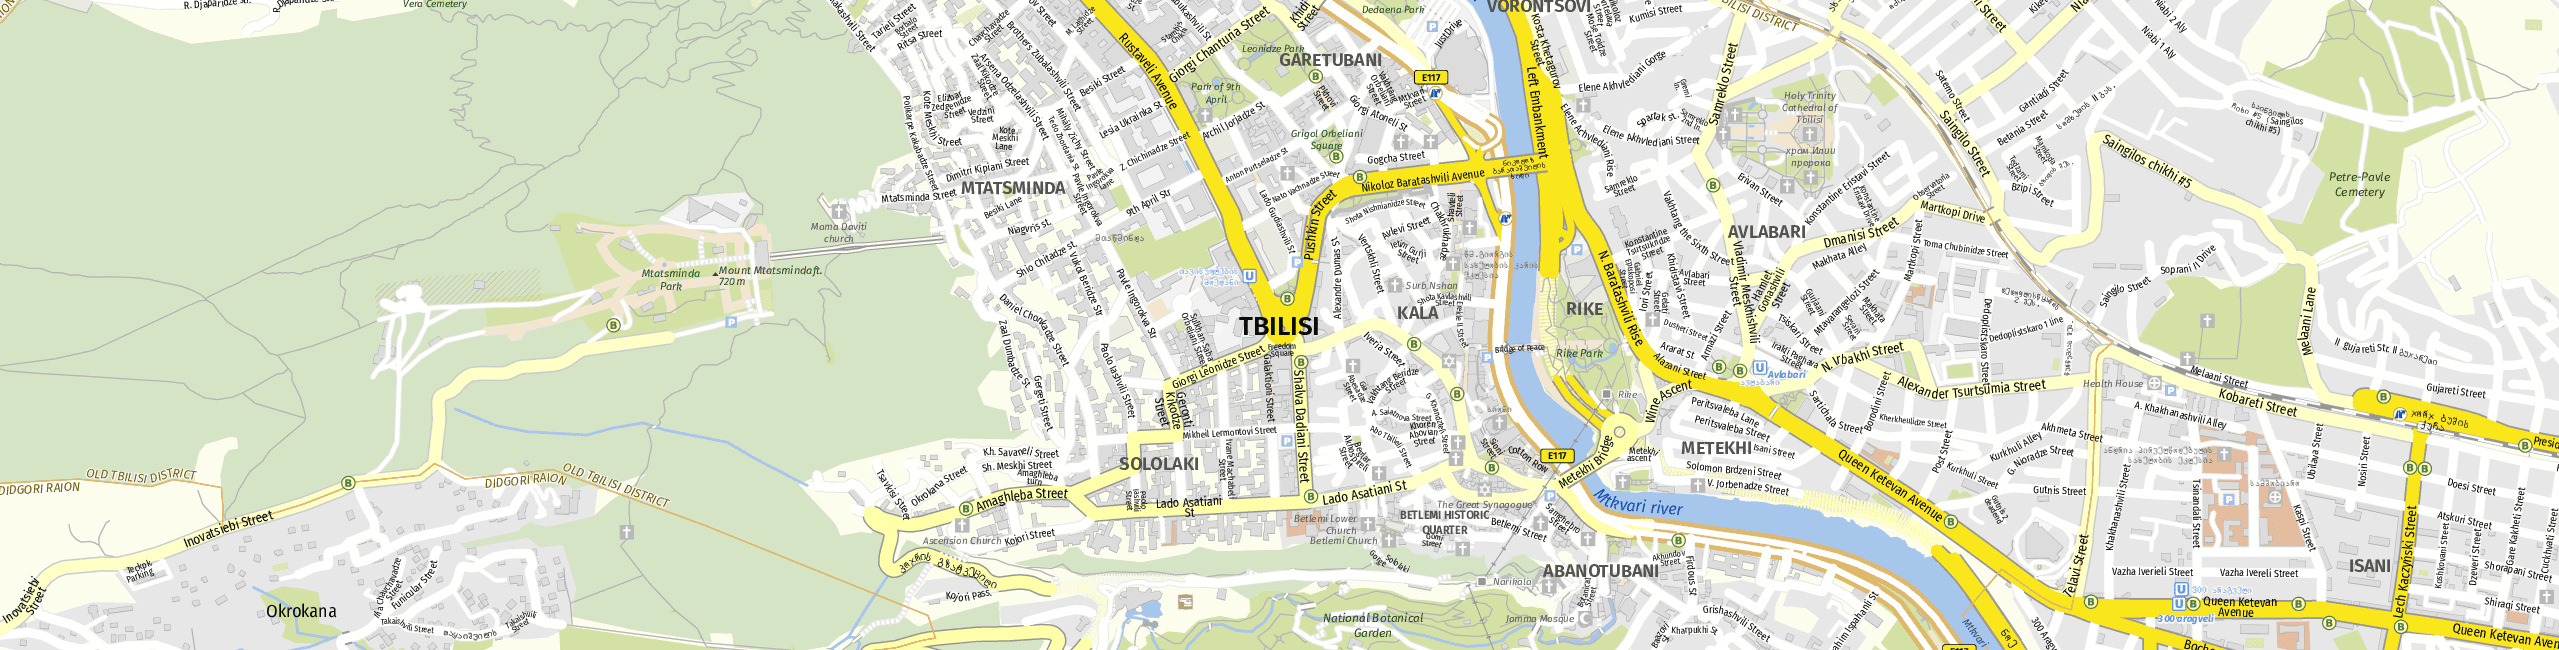 Stadtplan Tbilisi zum Downloaden.